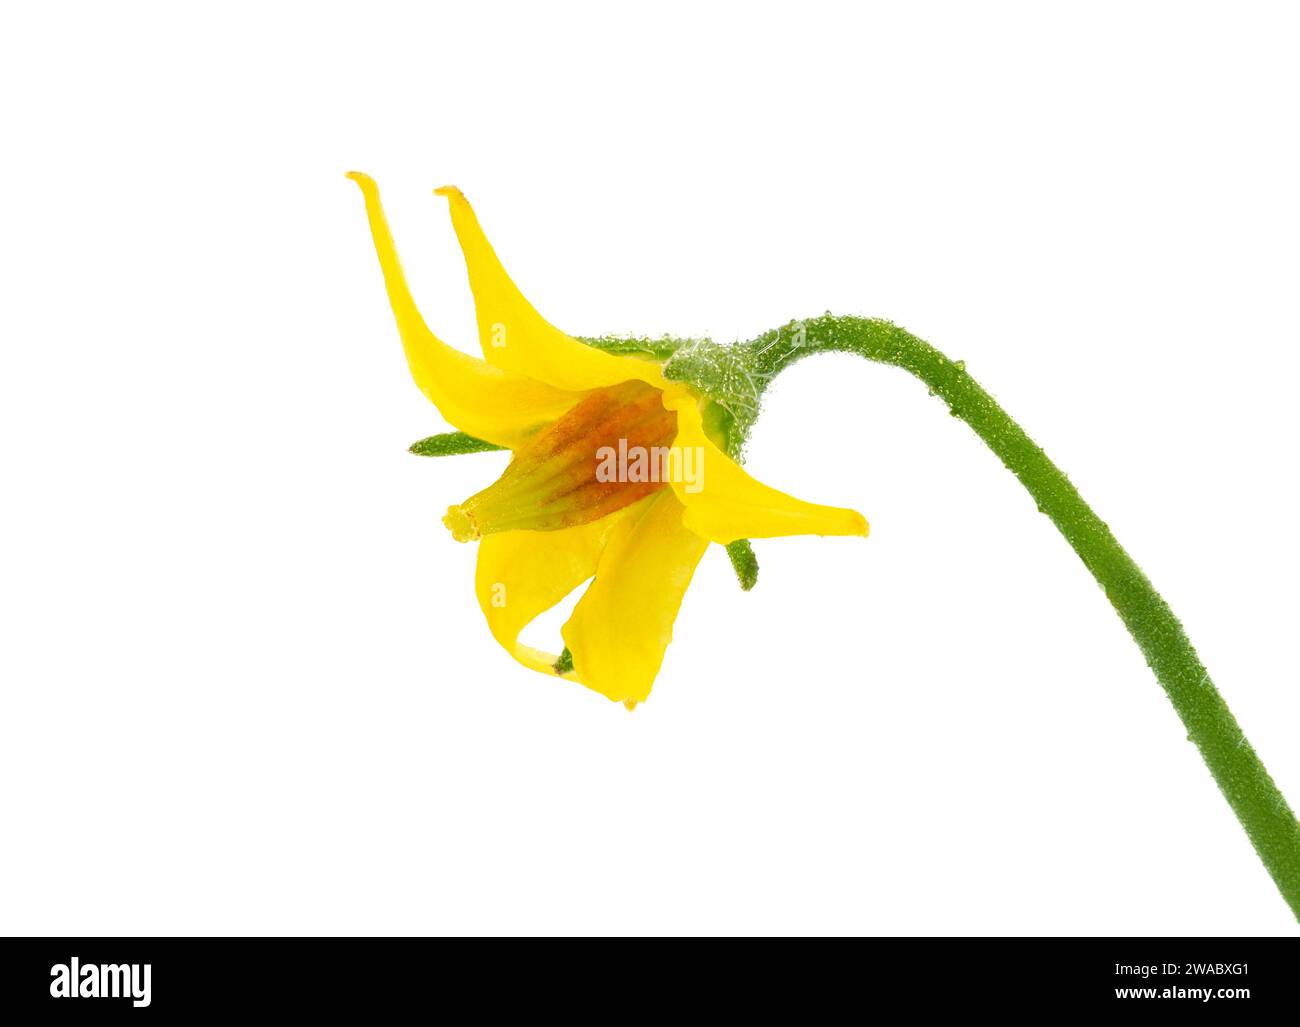 Plum tomato flower isolated on white background, Solanum lycopersicum Stock Photo